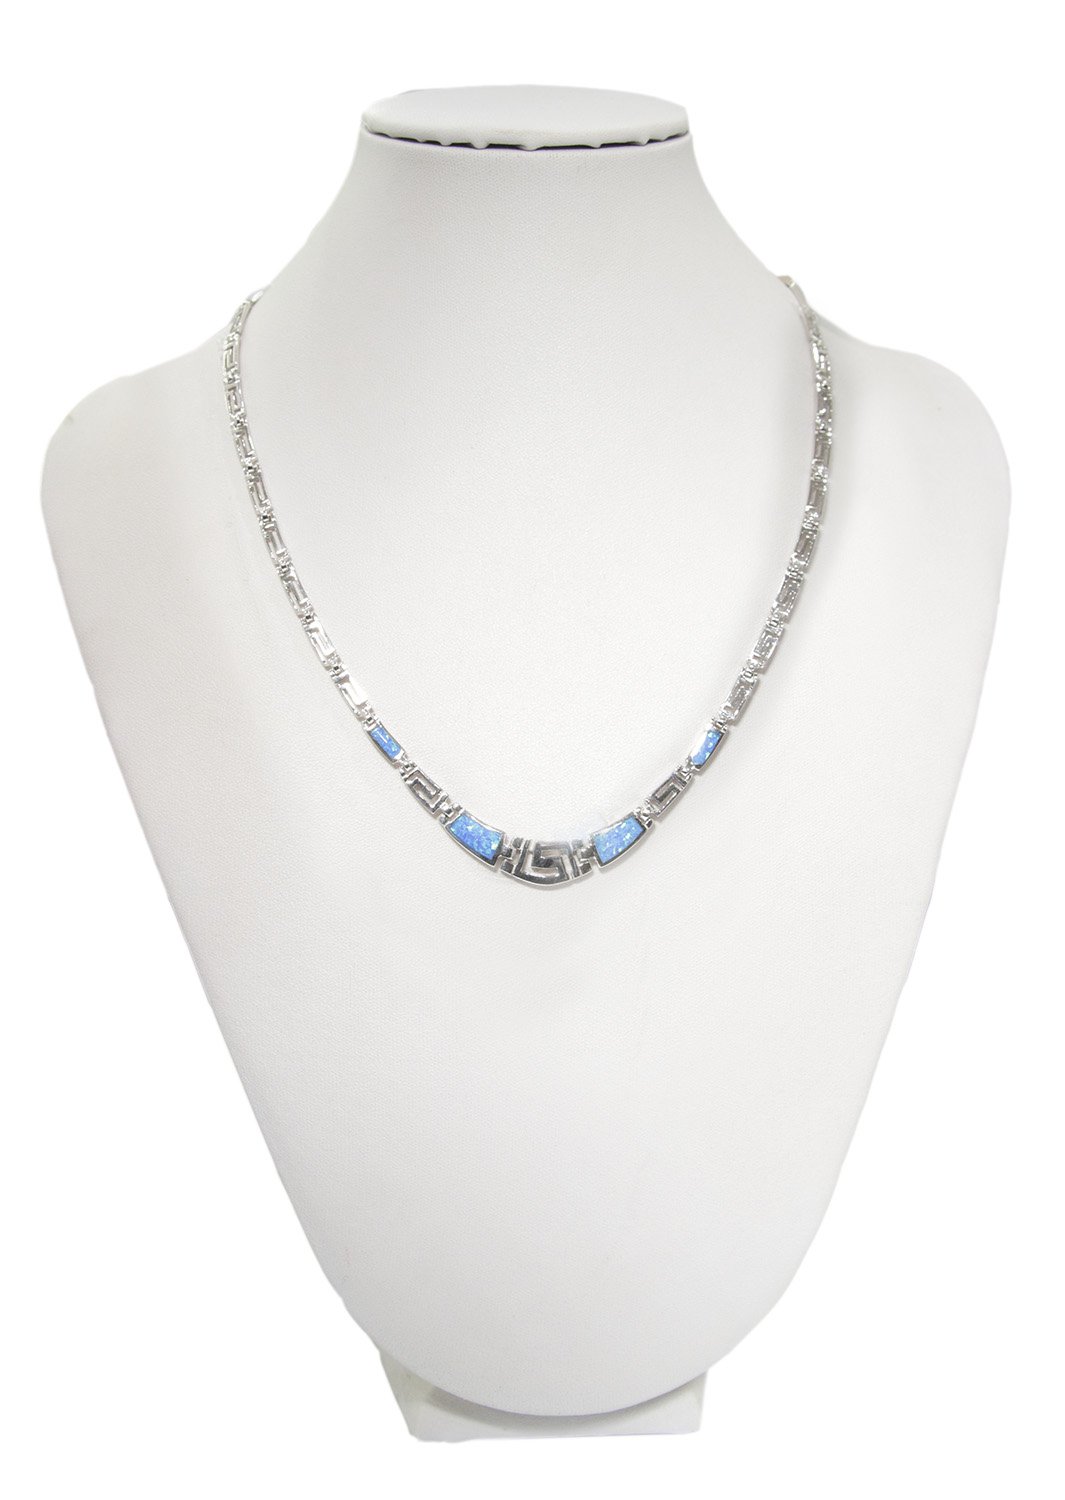 Greek key design - meander and opal gemstones silver necklace